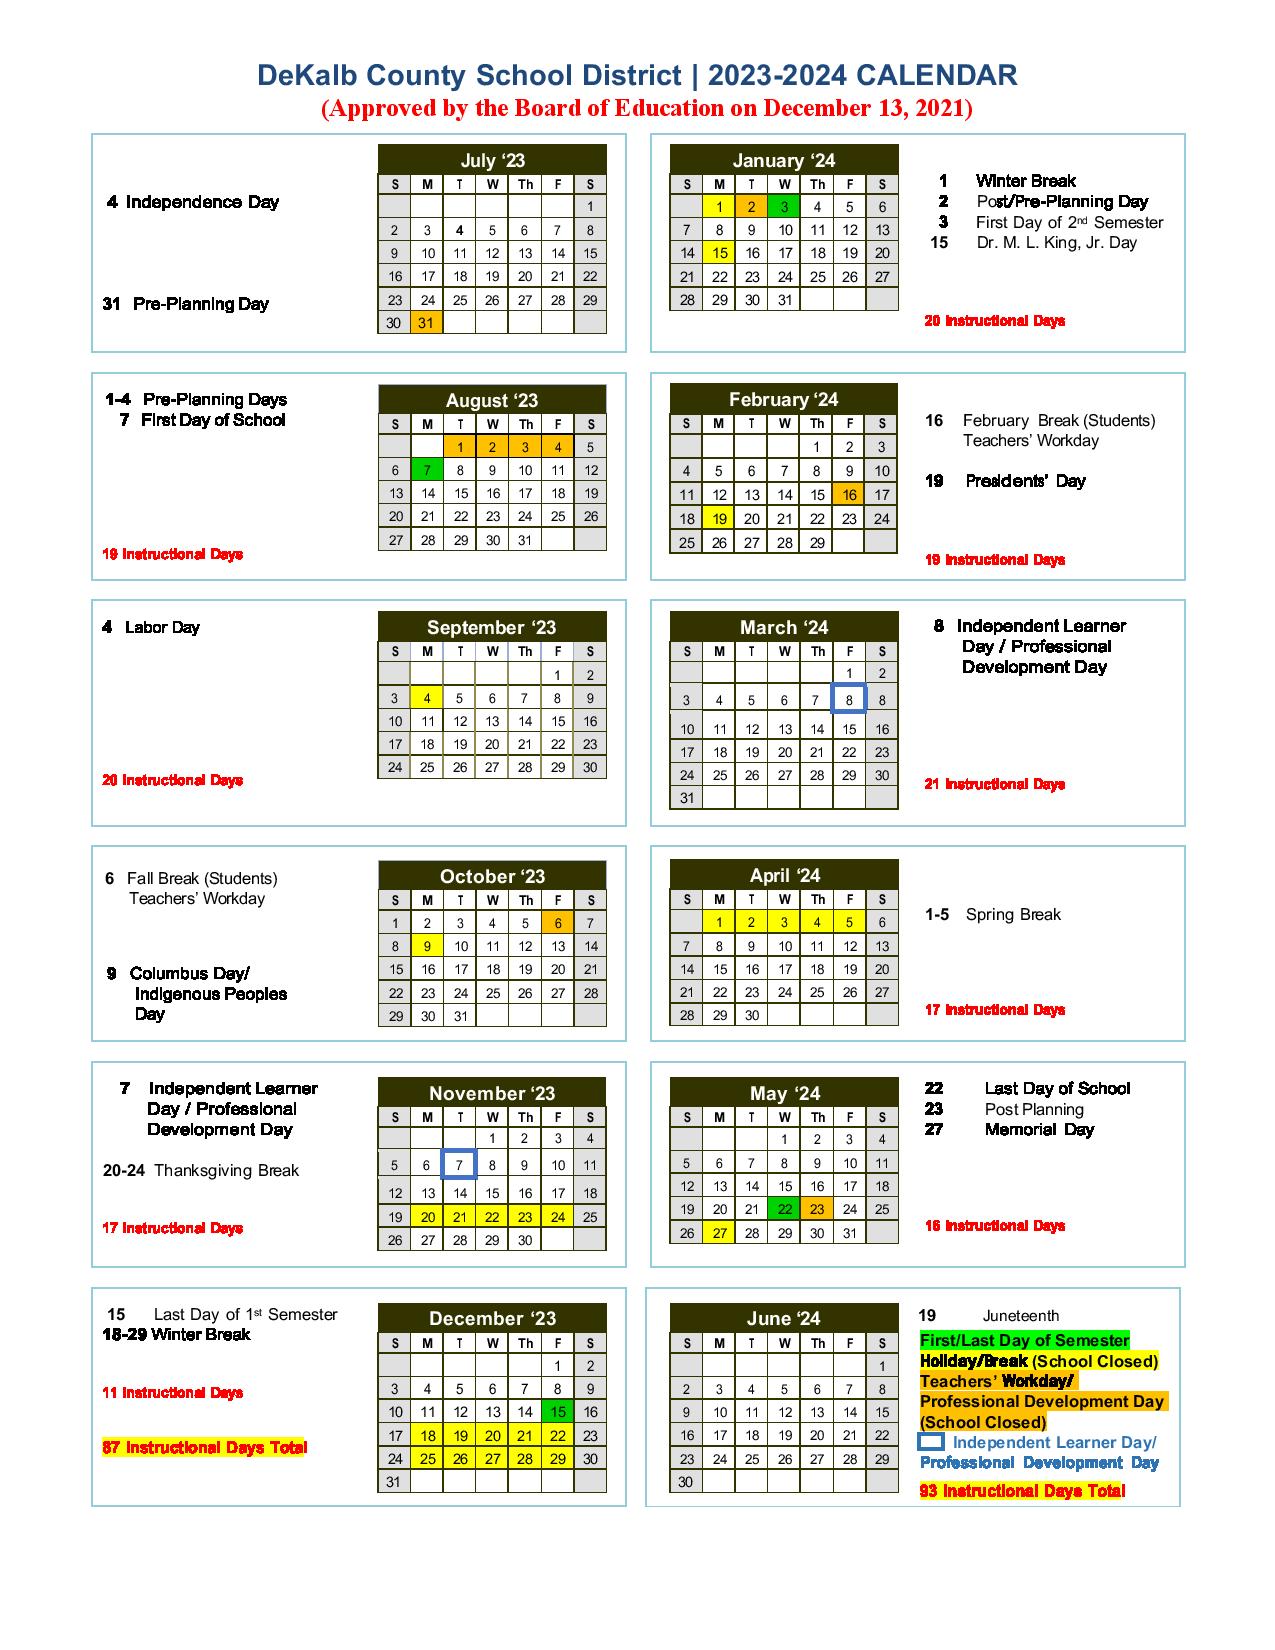 DeKalb County School District Calendar 2023 2024